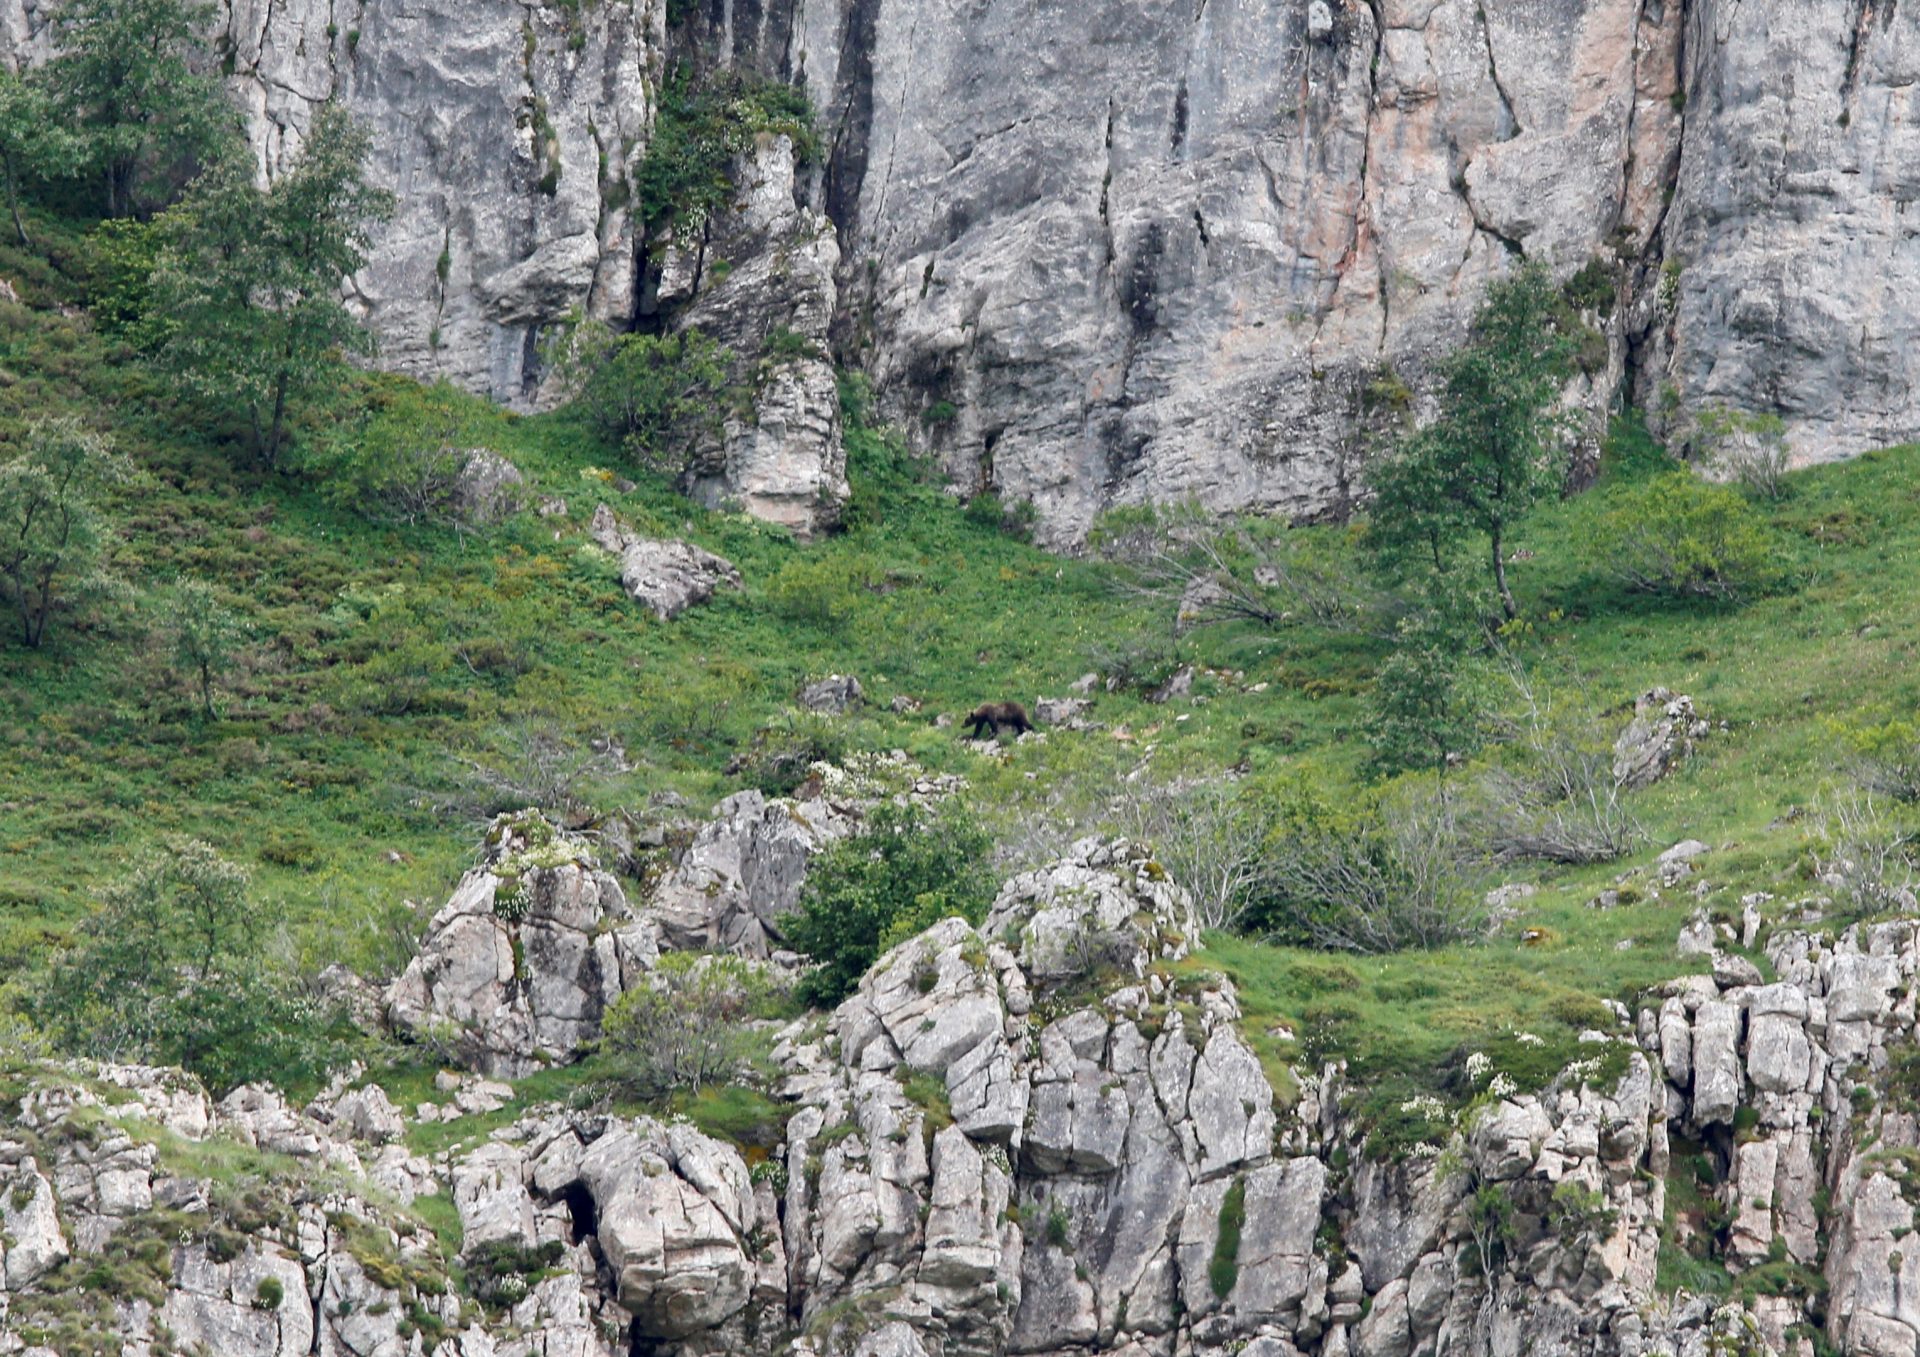 Un oso pardo en un parque natural, especie que en los últimos años ha ido mejorando el número de ejemplares en la península aunque sigue en peligro de extinción.